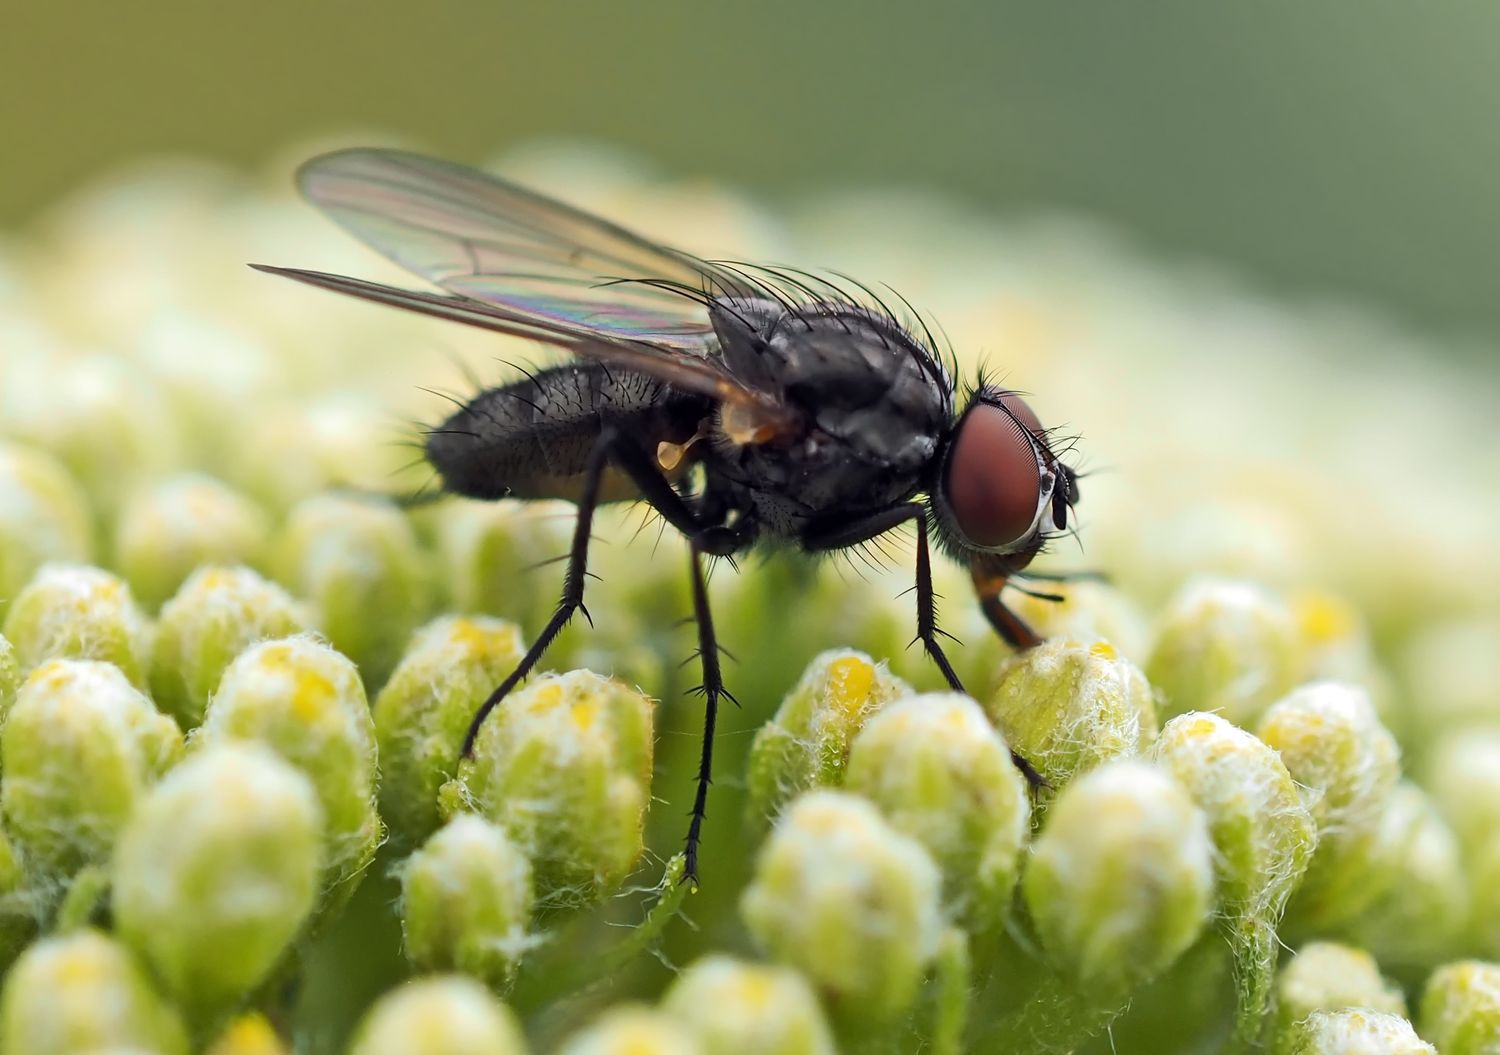 А знаете ли вы, что в природе есть травы, которые помогут вам справиться с надоедливыми мухами?